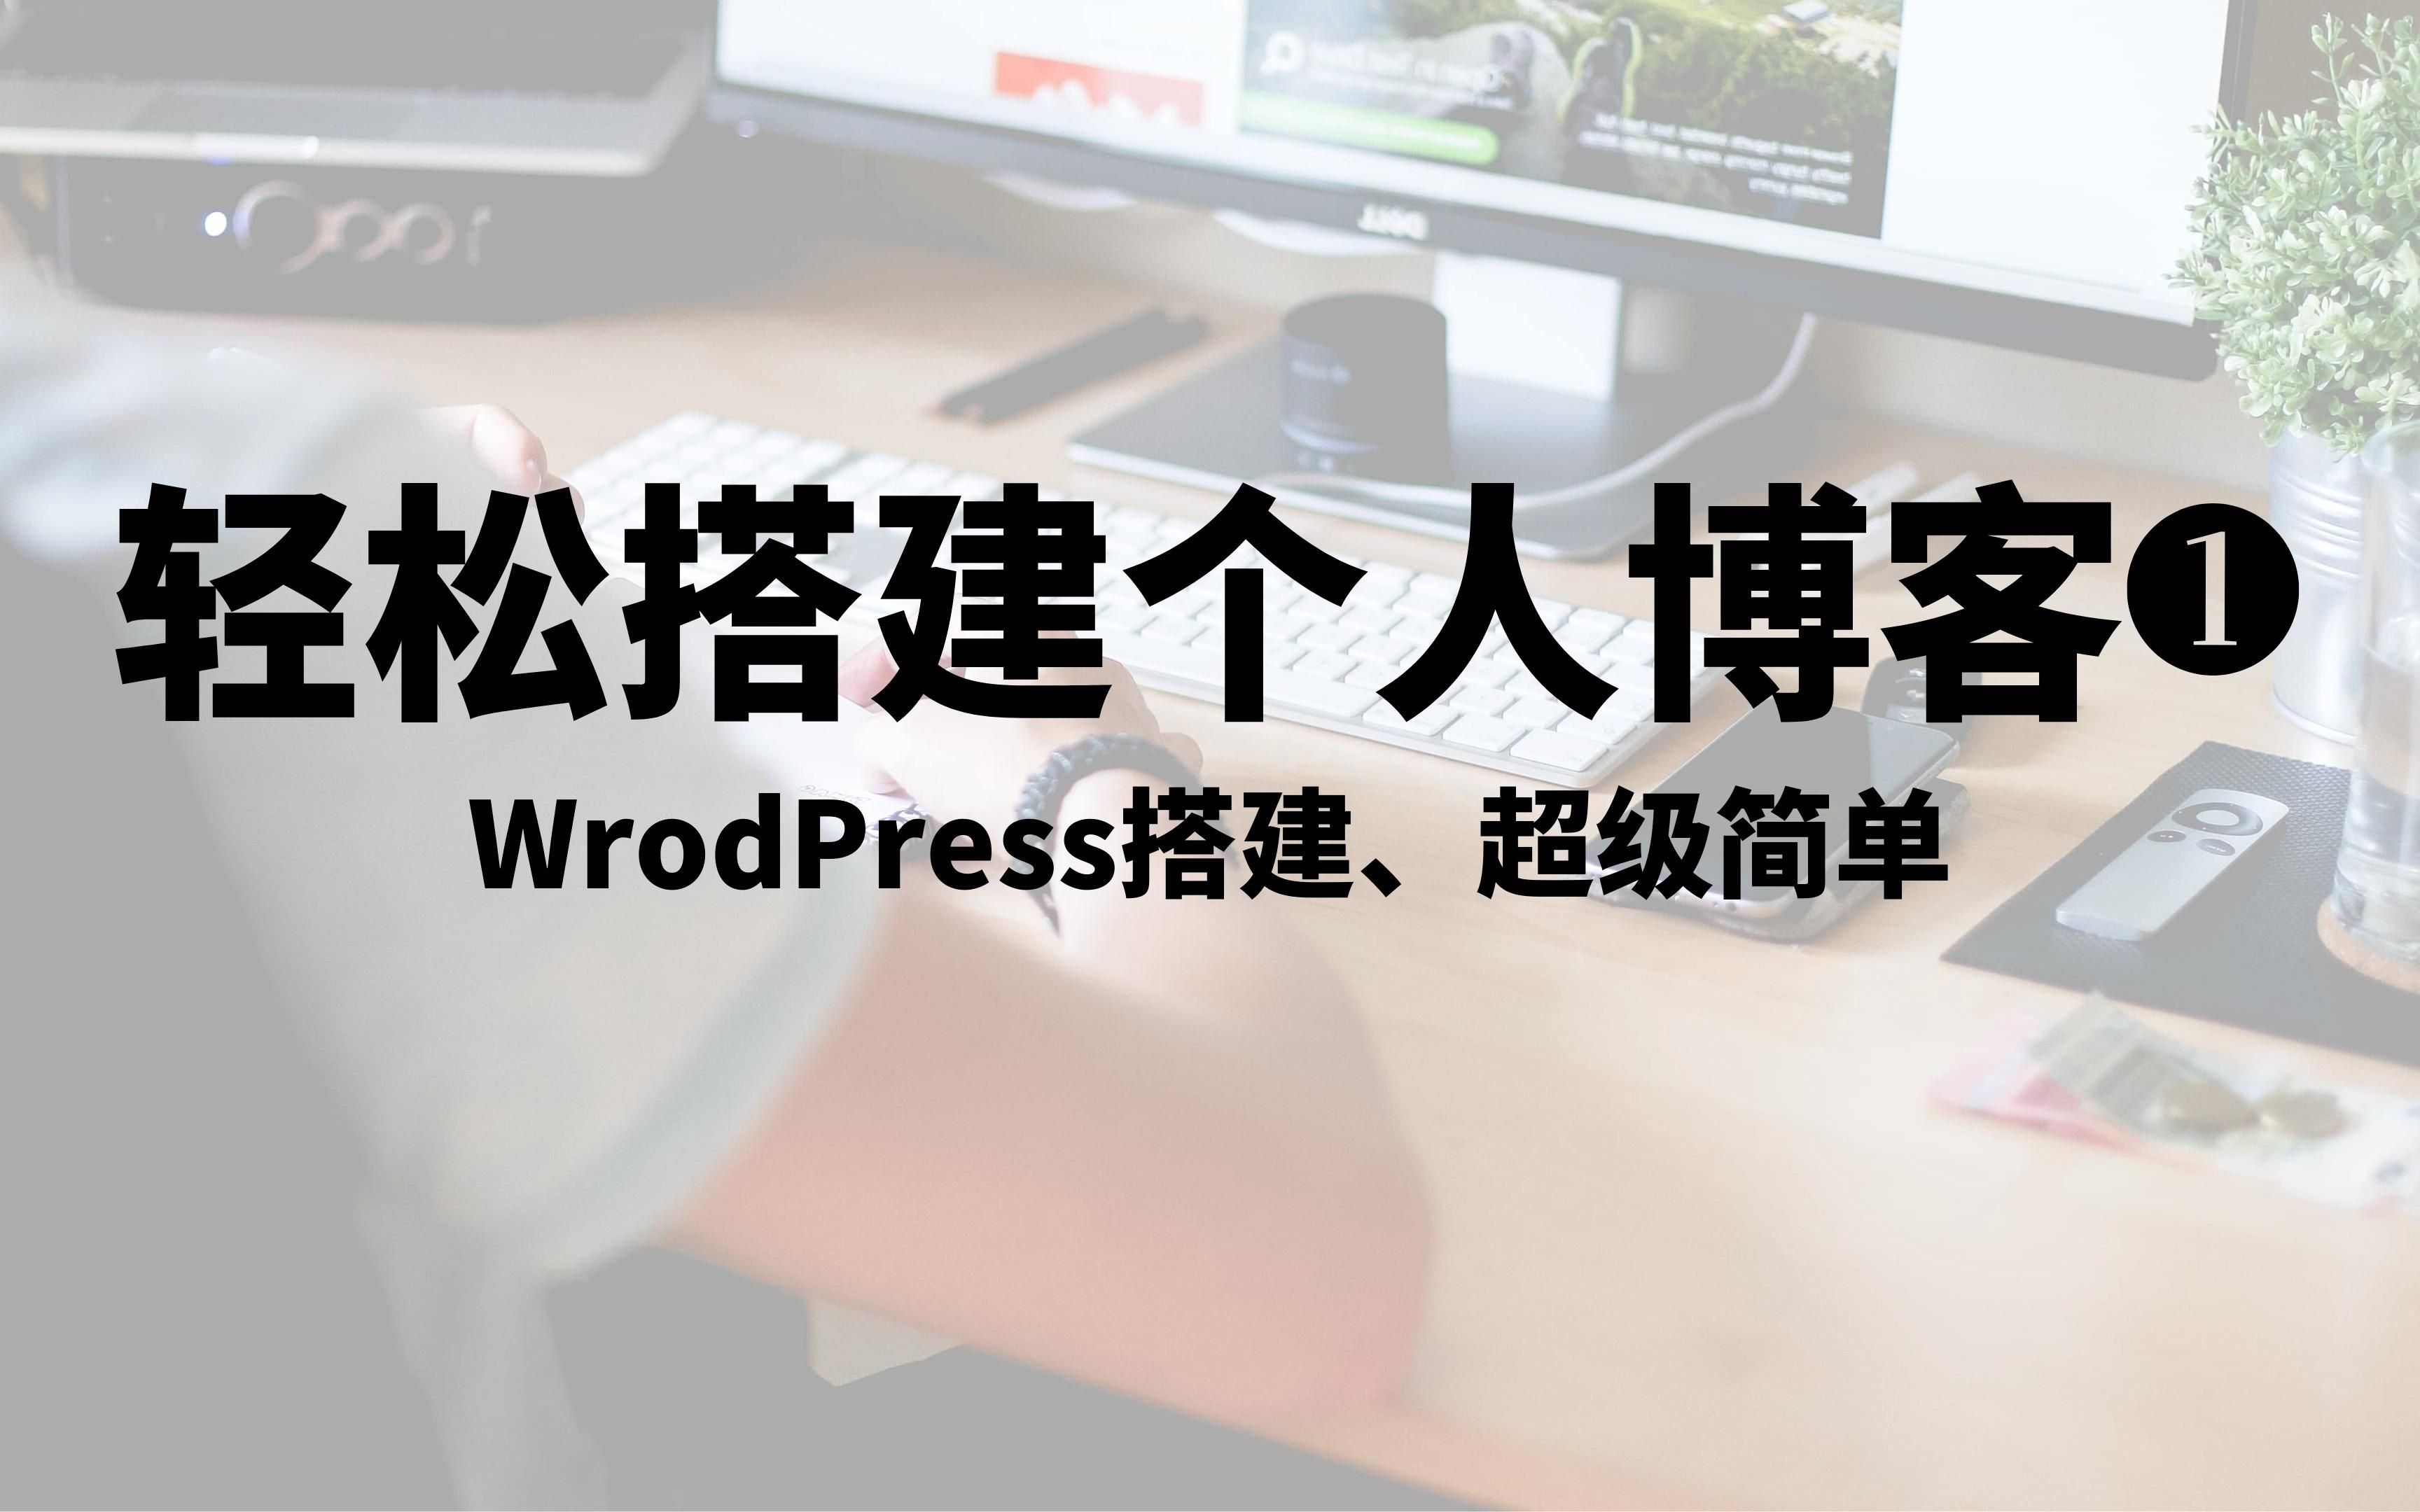 如何快速制作一个Wordpress 网站&博客，一步一步详细中文教程，详尽WordPress建站教程，超级简单的网站&blog框架架构，轻松搭建一个属于自己的博